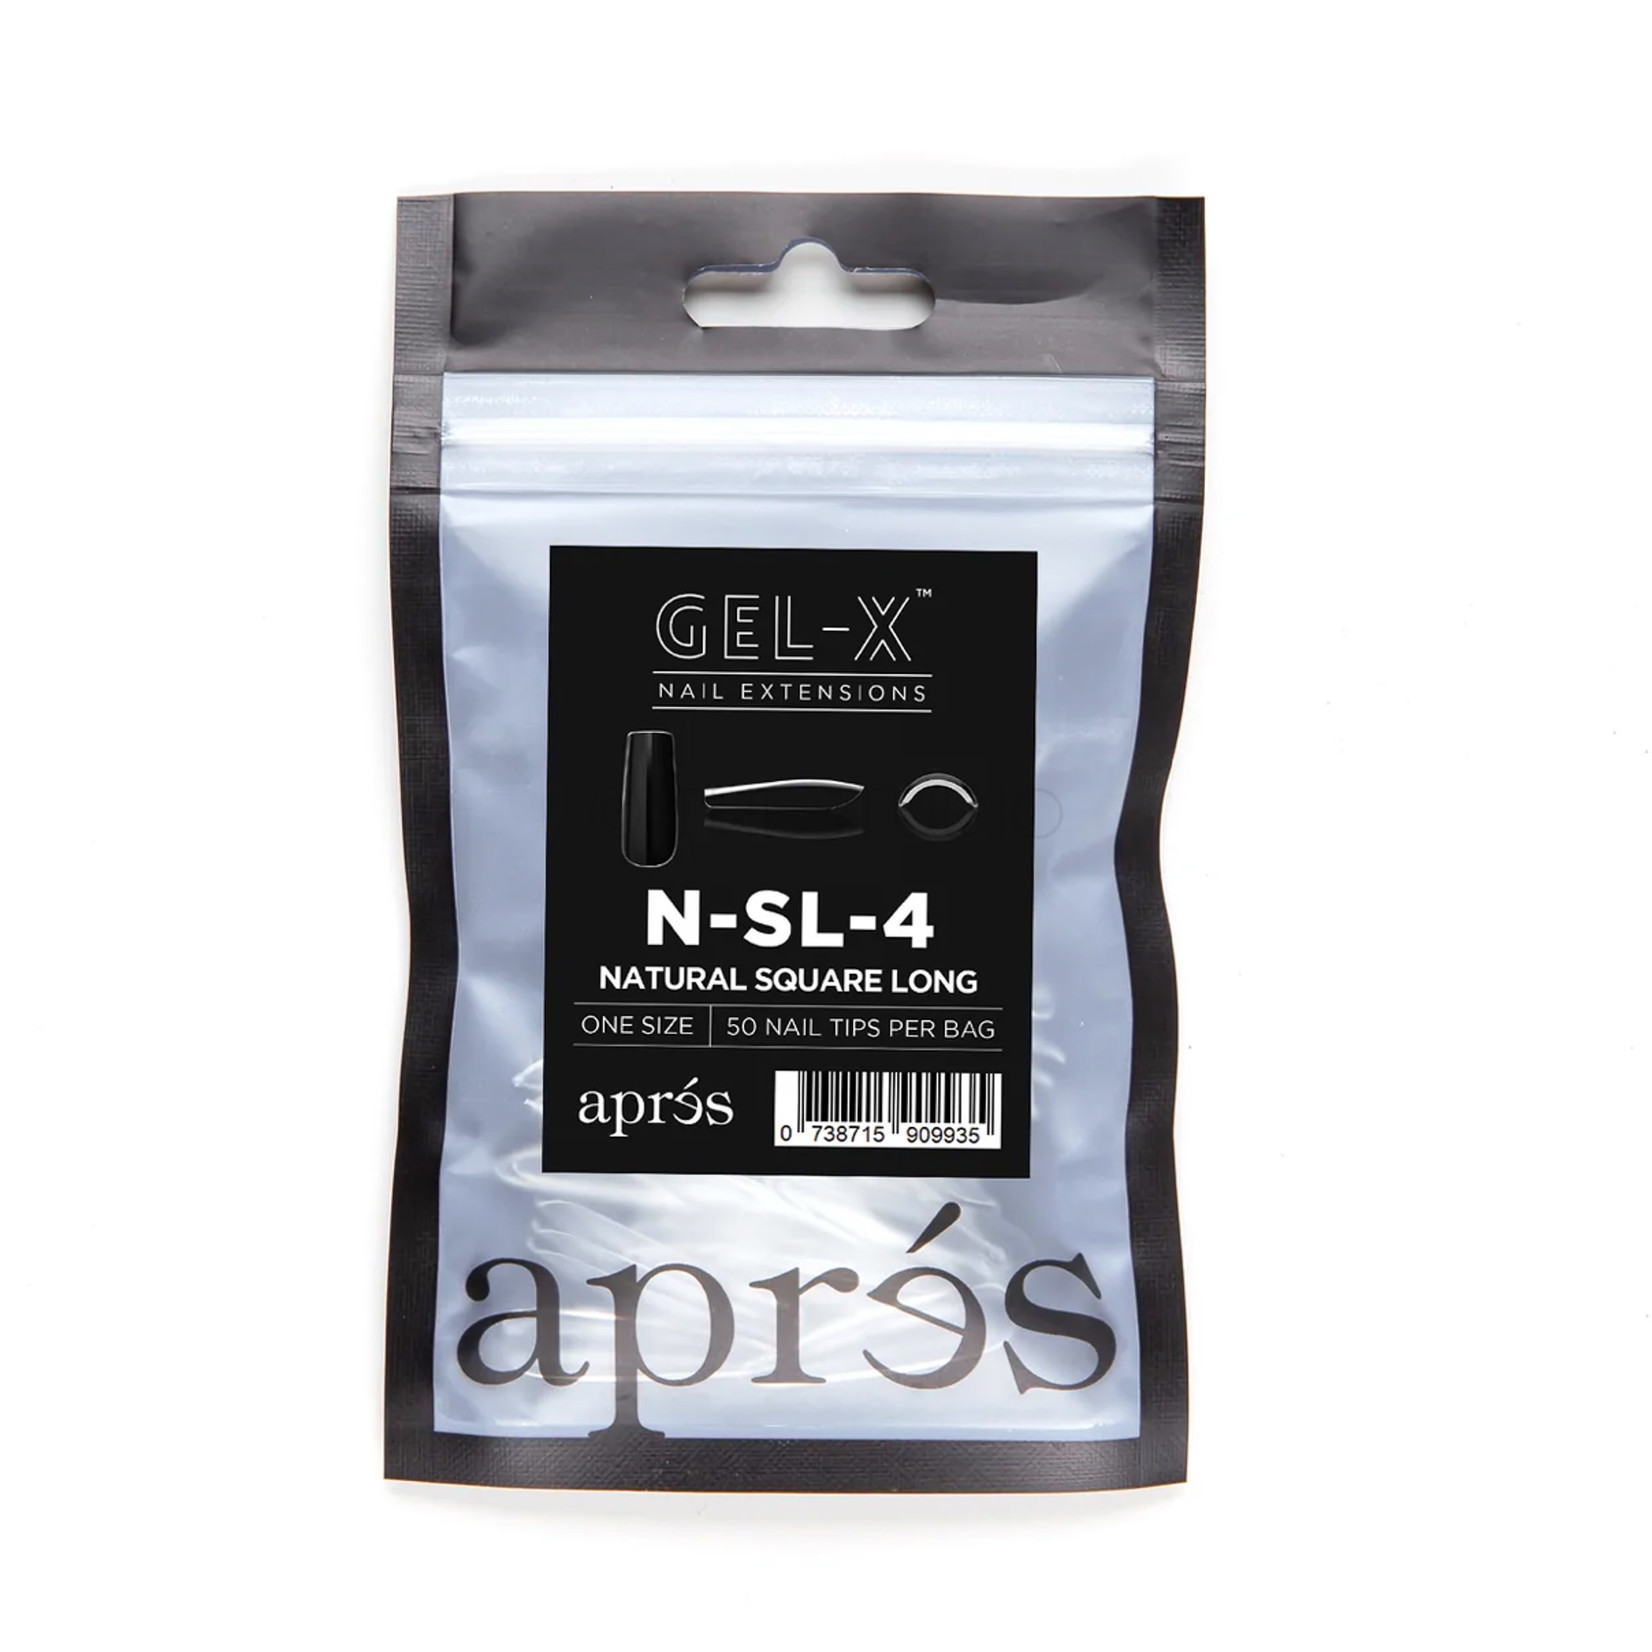 Apres Apres - Refill Bags - Natural - Square Long - #4